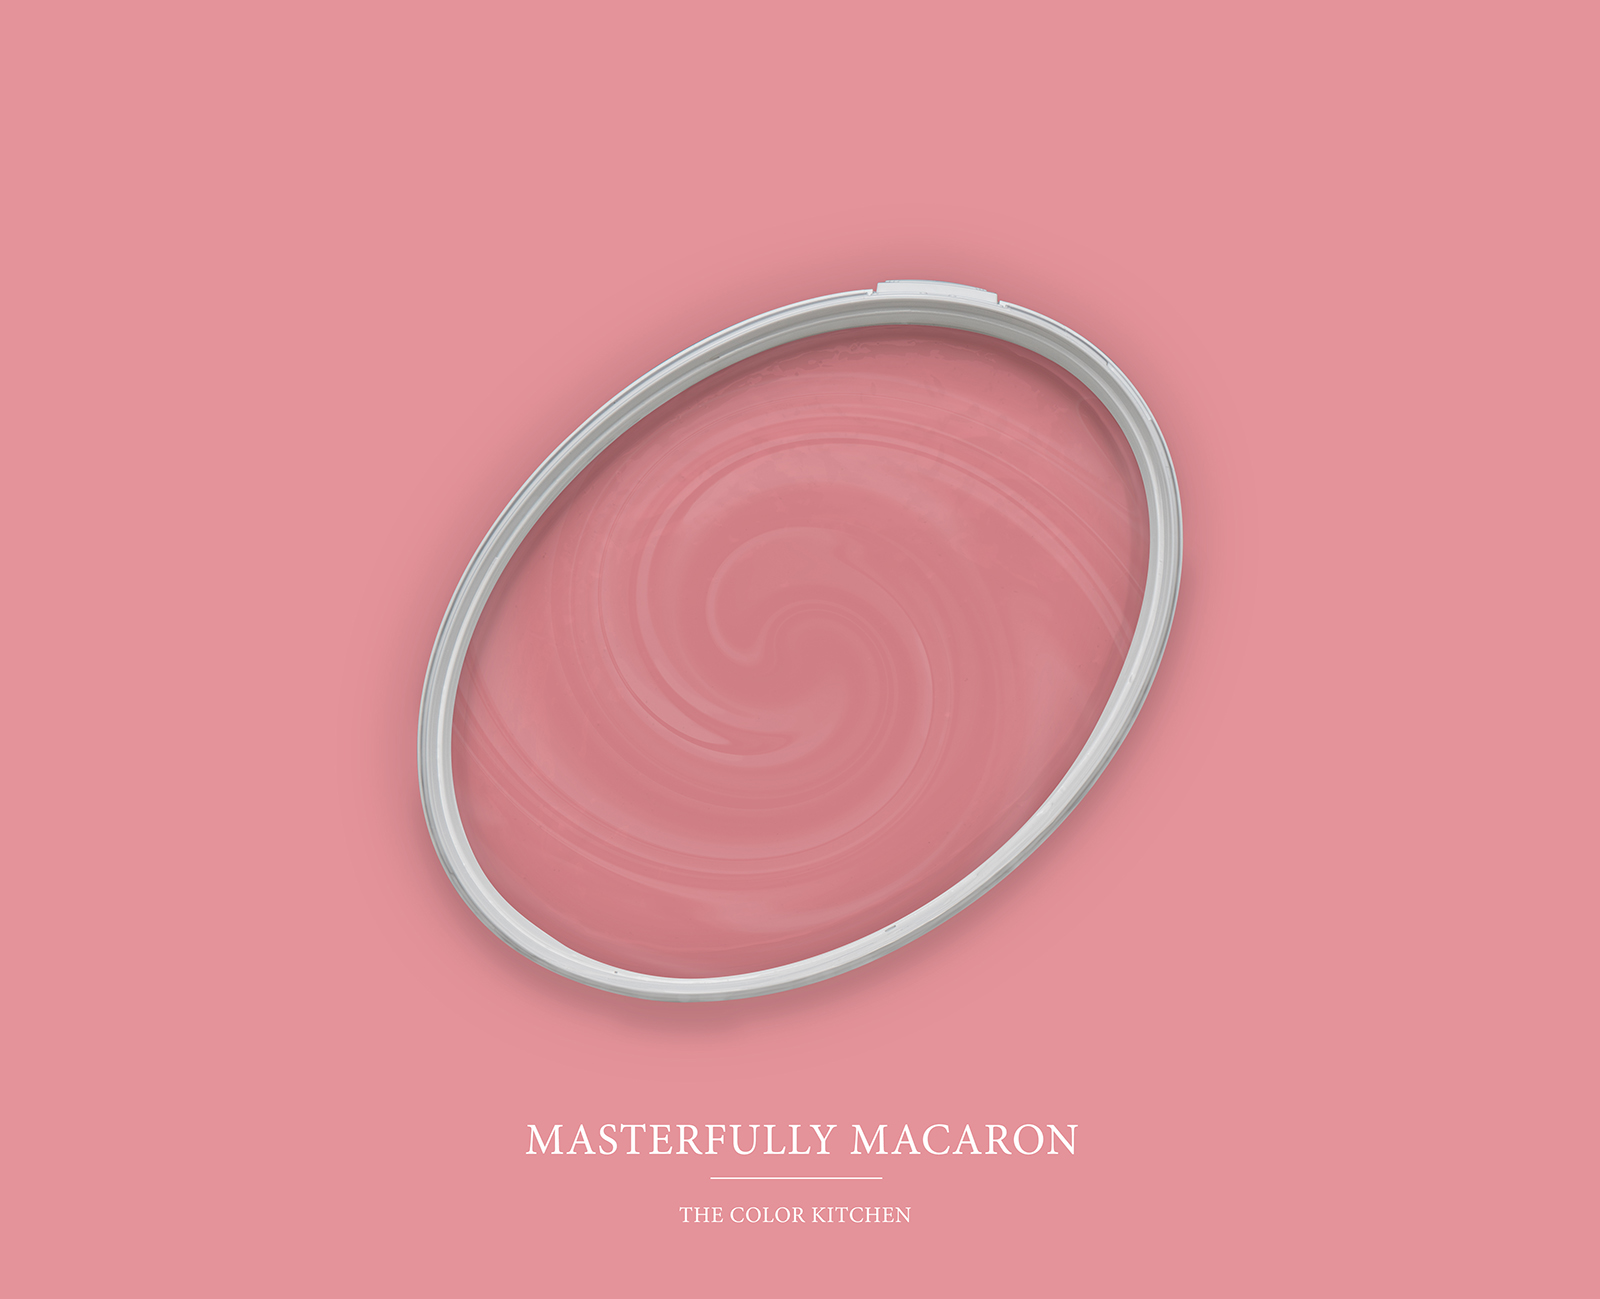         Wandfarbe in lebendigem Pink »Masterfully Macaron« TCK7010 – 2,5 Liter
    